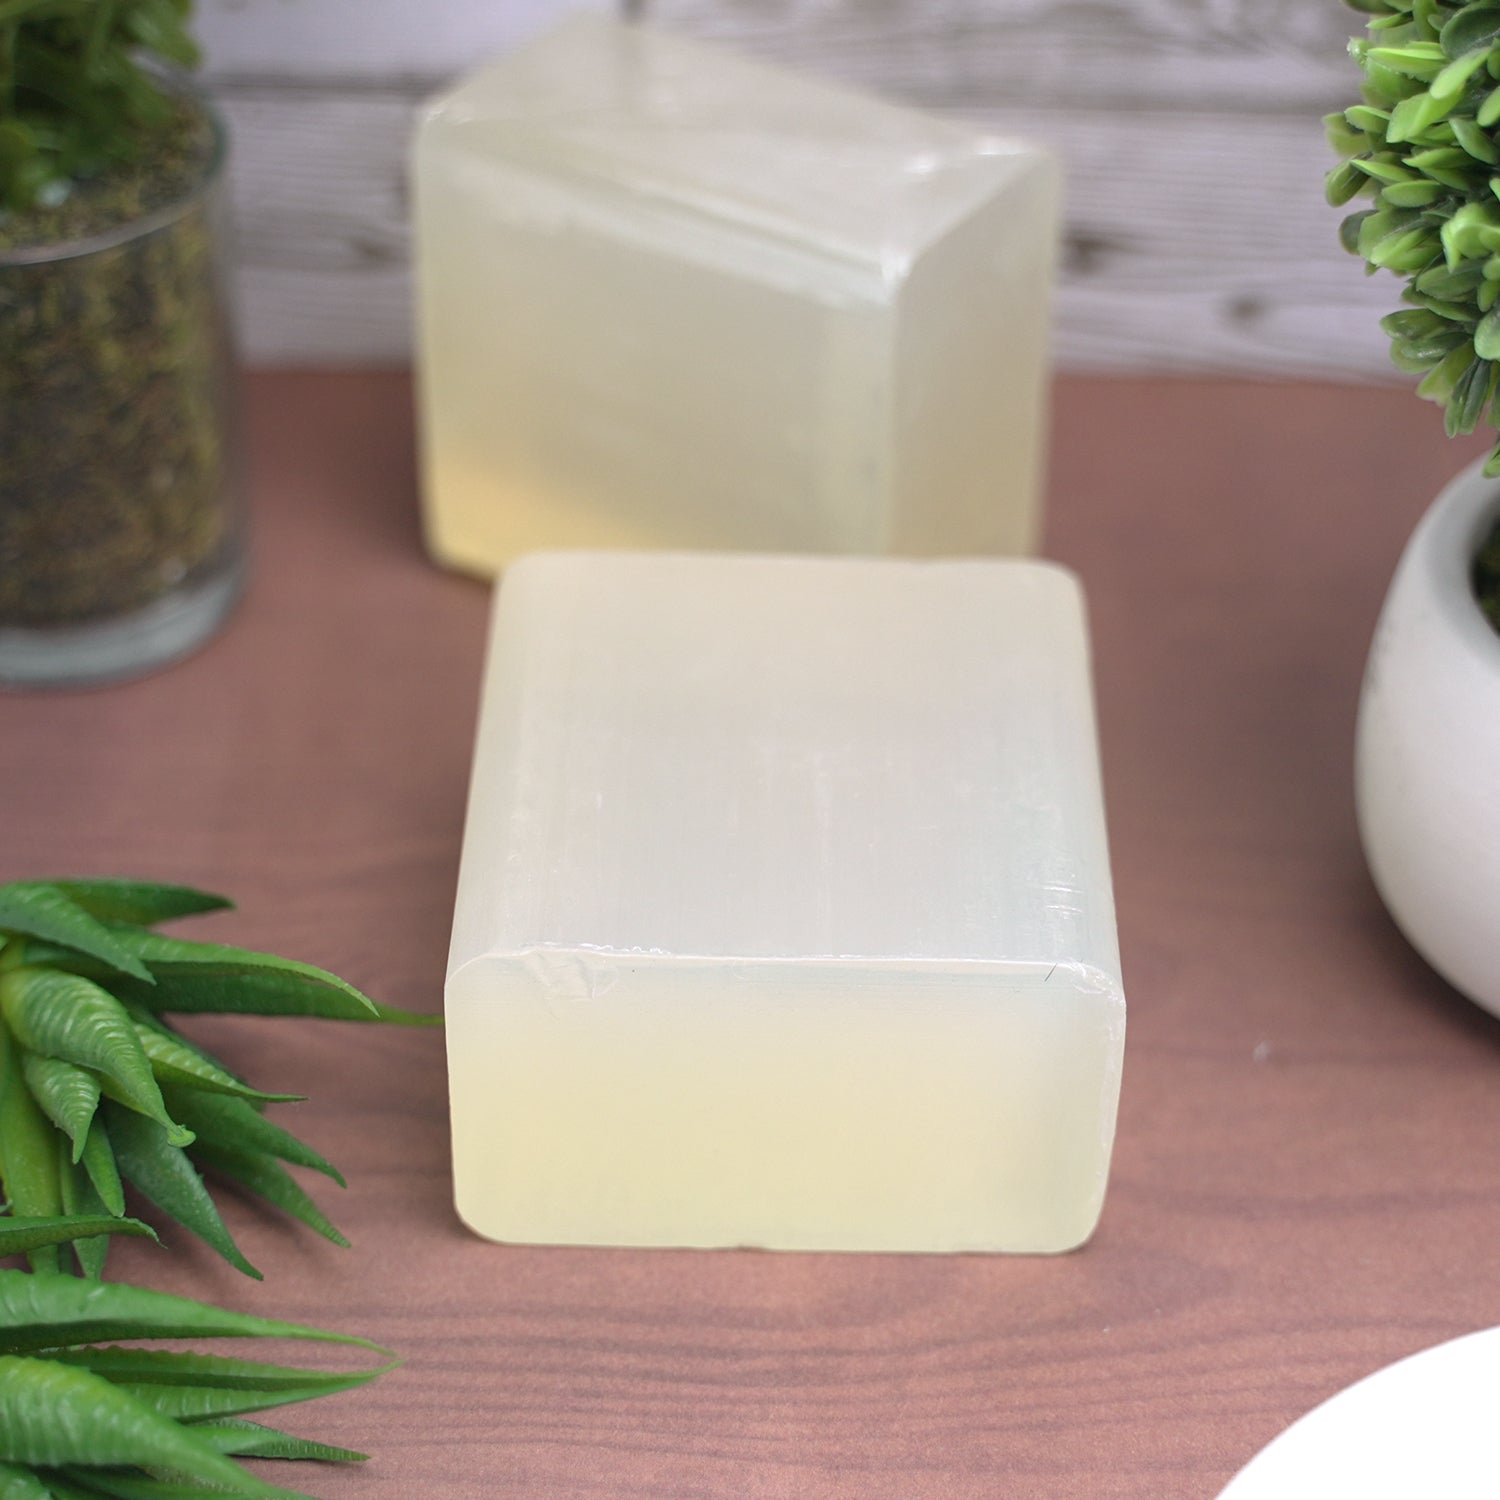 Aloe soap base - 17.6 oz